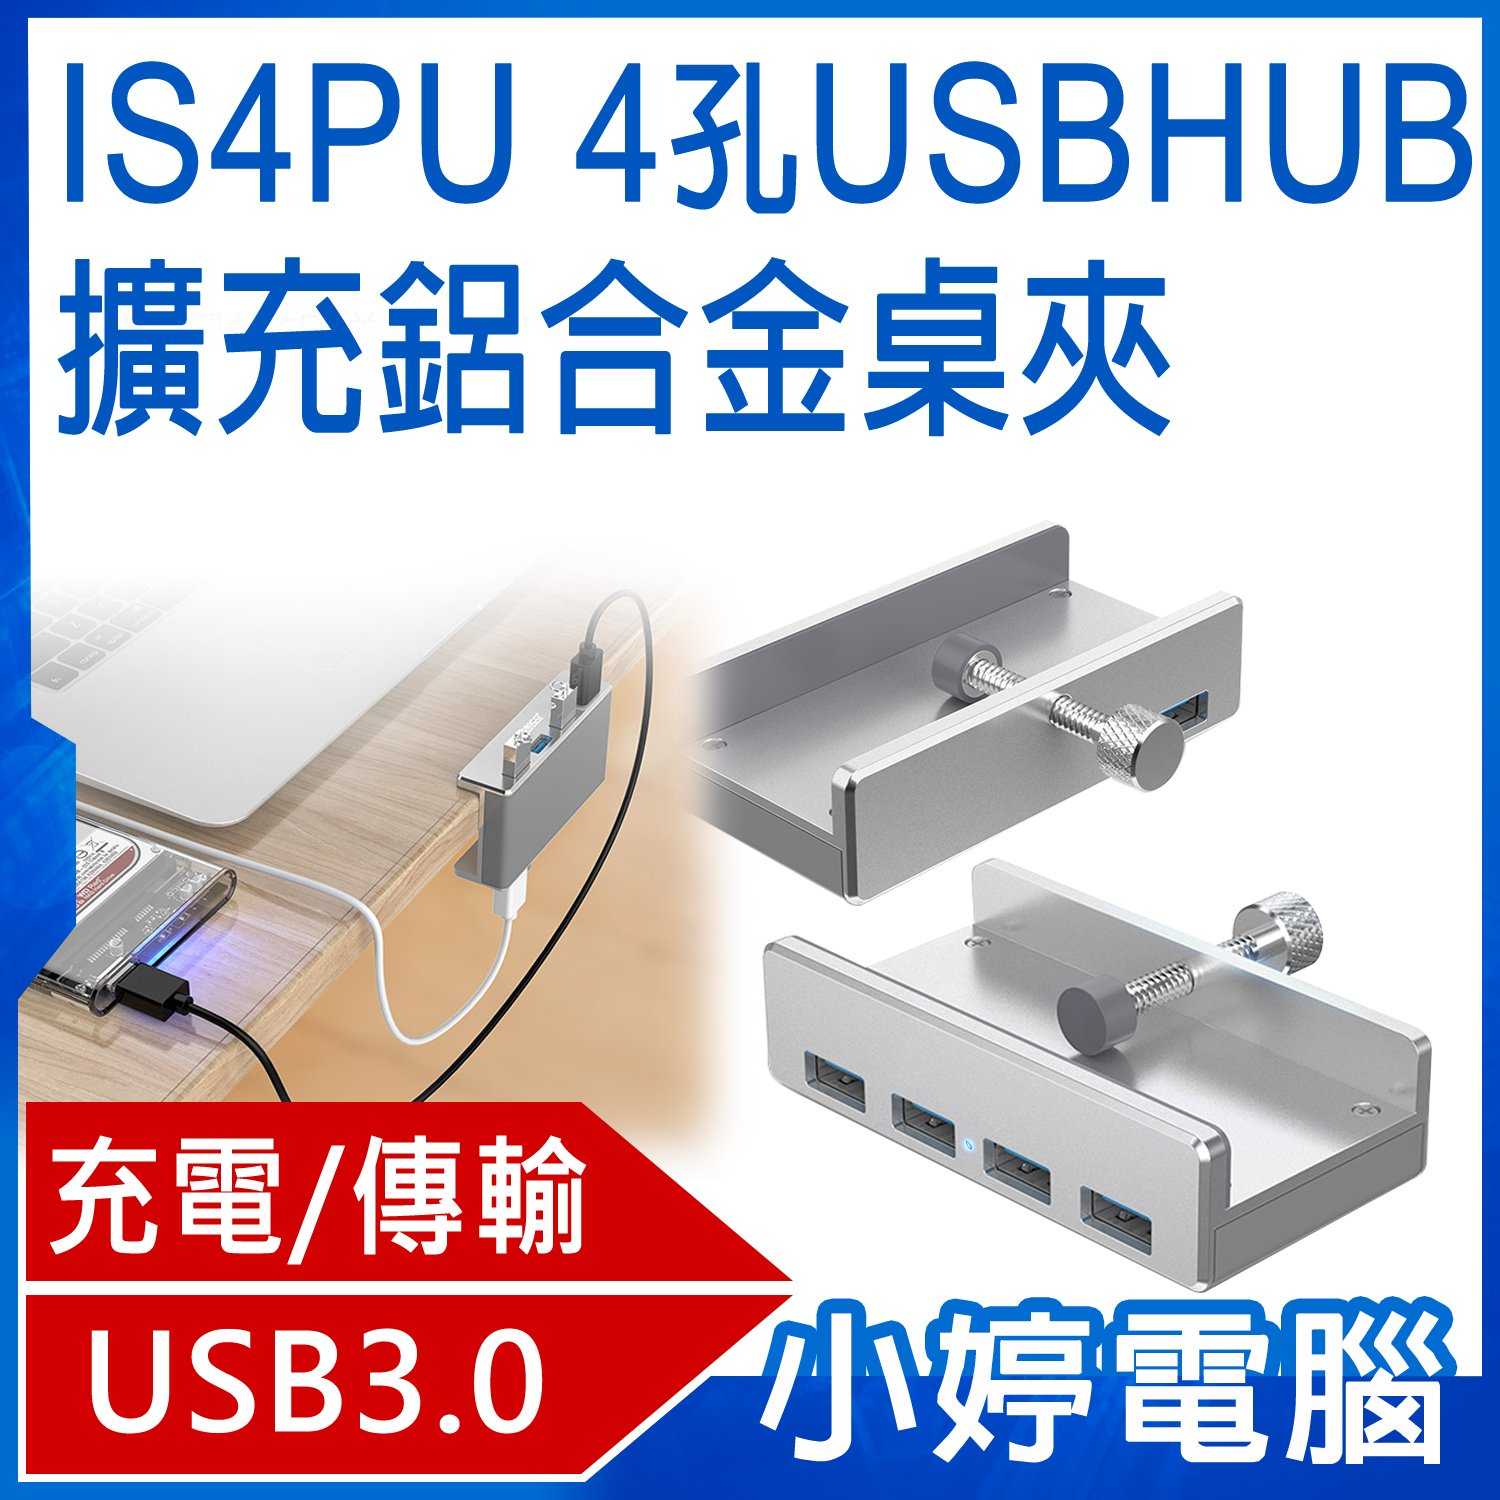 【小婷電腦】IS4PU 四孔USB HUB鋁合金擴充桌夾 資料傳輸/充電 穩固方便 橡膠螺帽 含稅公司貨